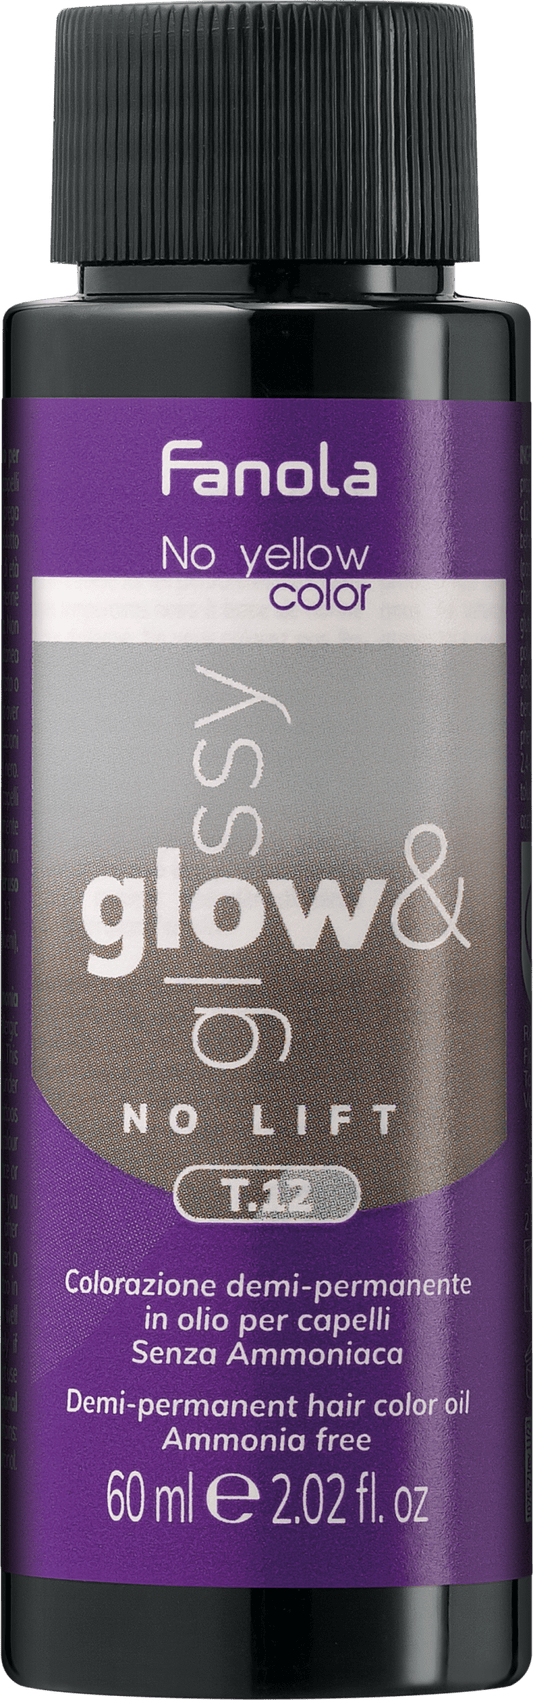 Fanola Glow & Glossy Toner T. 12